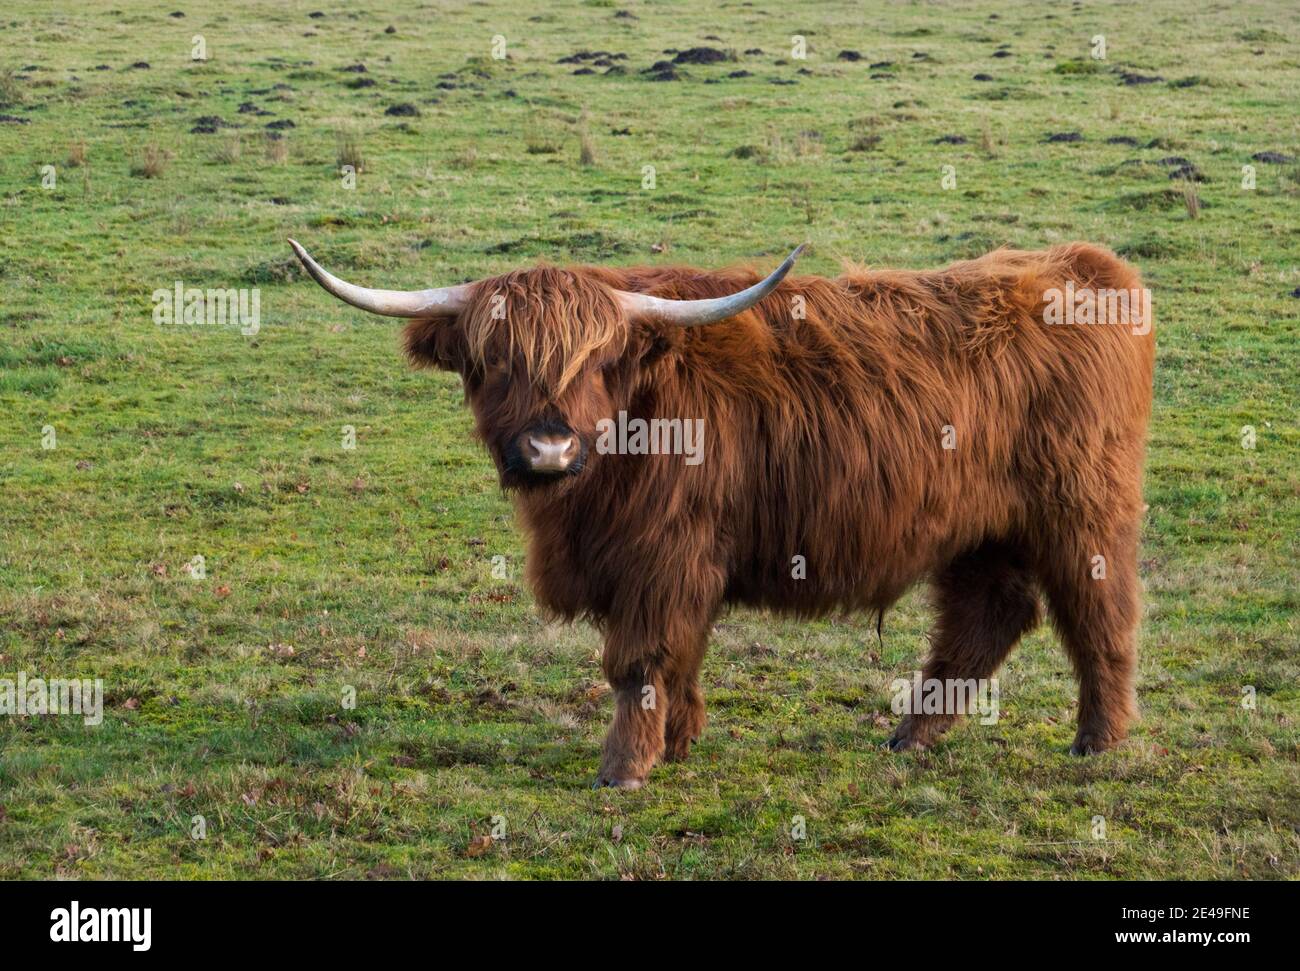 Vache écossaise de montagne avec de longs cheveux rouges et de longues cornes vue de côté Banque D'Images